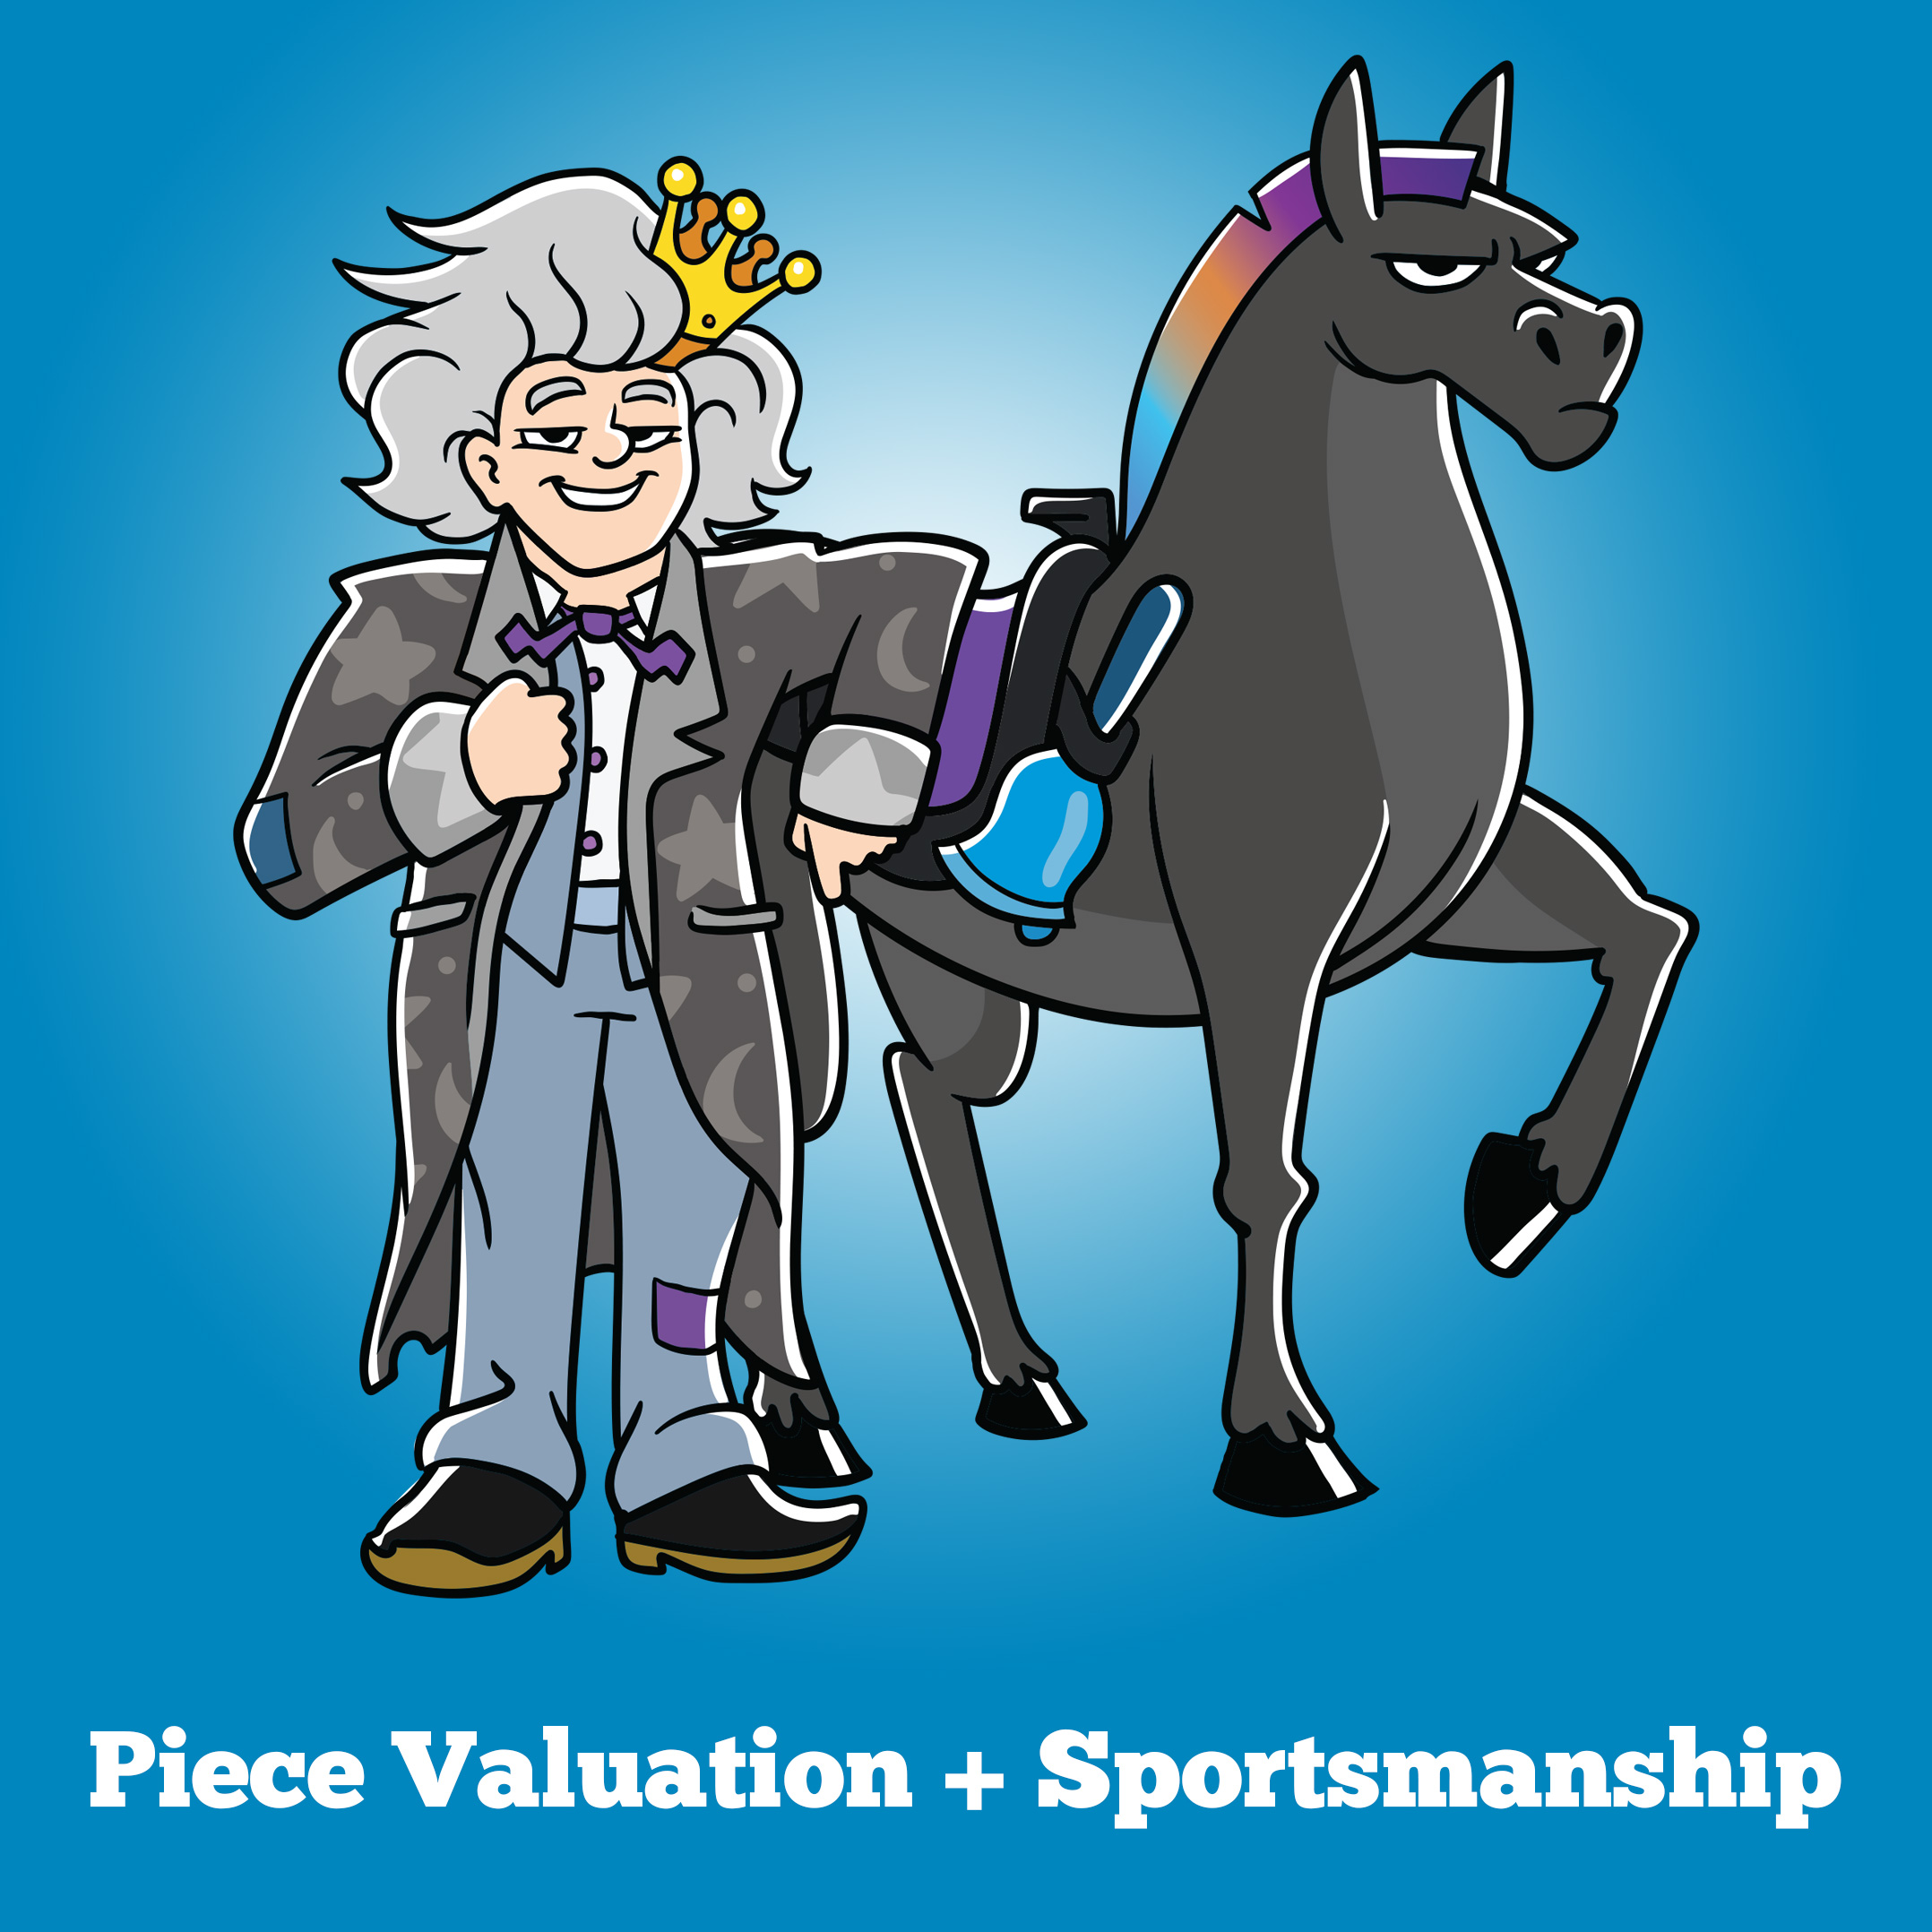 Level 3: Piece Valuation + Sportsmanship